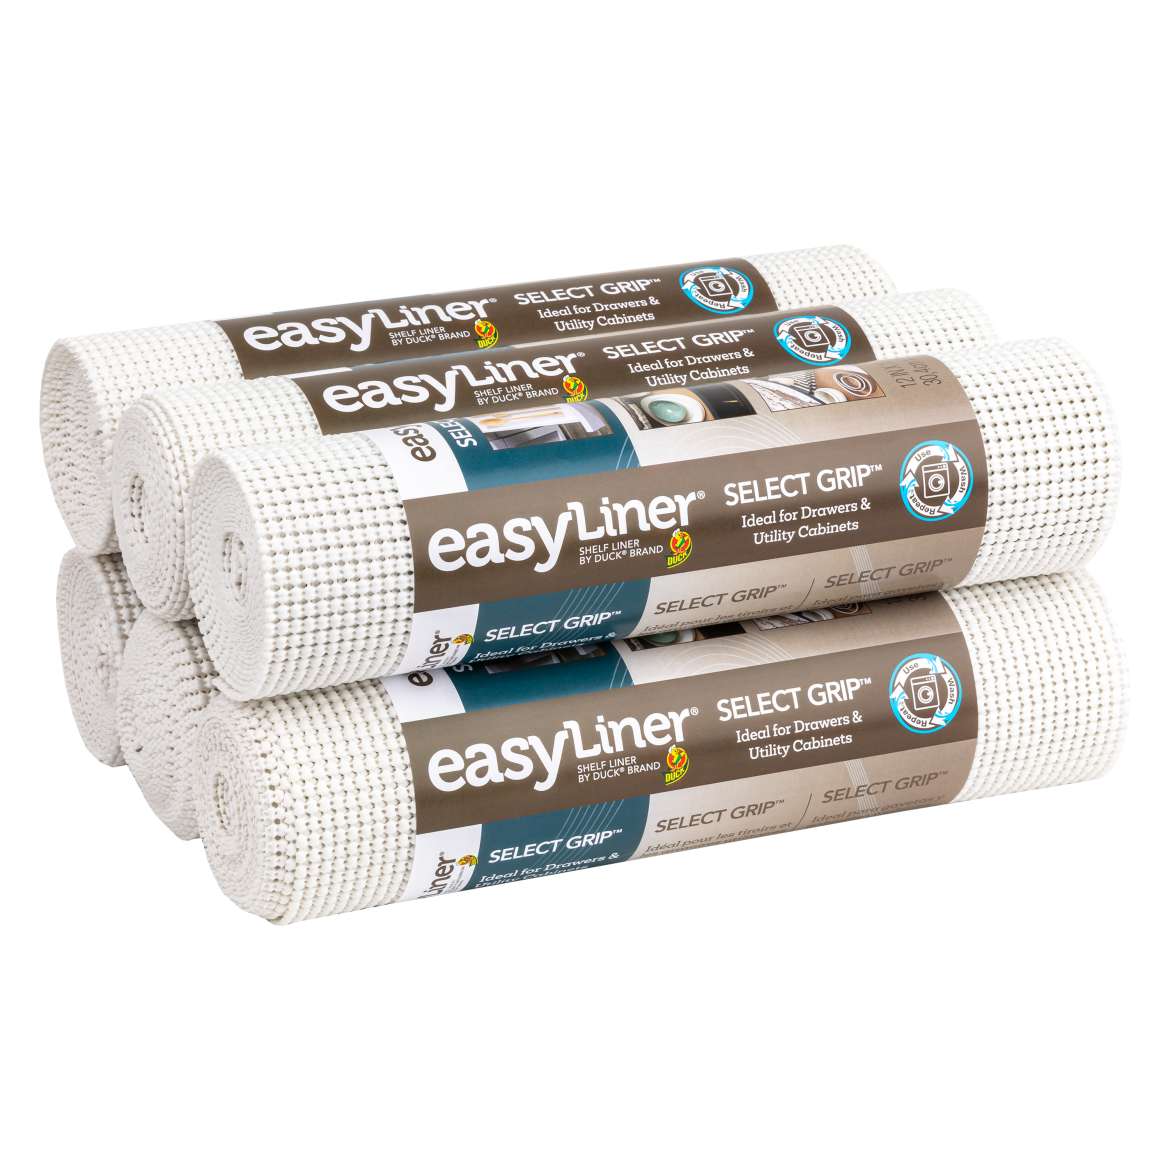 Select Grip™ EasyLiner® Brand Shelf Liner - White, 6 pk, 12 in. x 10 ft.